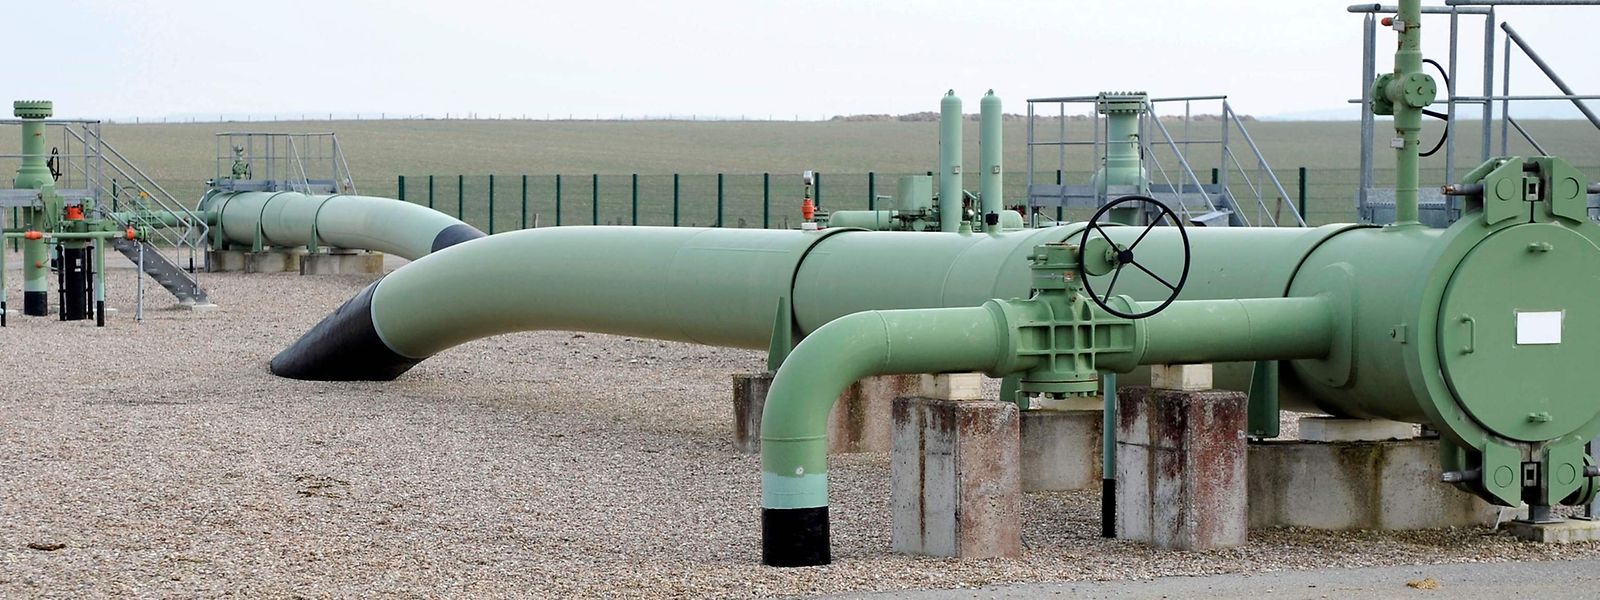 Longtemps vue comme le «cul-de-sac» du gaz russe, la France est devenue l'une des portes d'entrée du gaz en Europe depuis que le gaz de Moscou n'arrive plus.